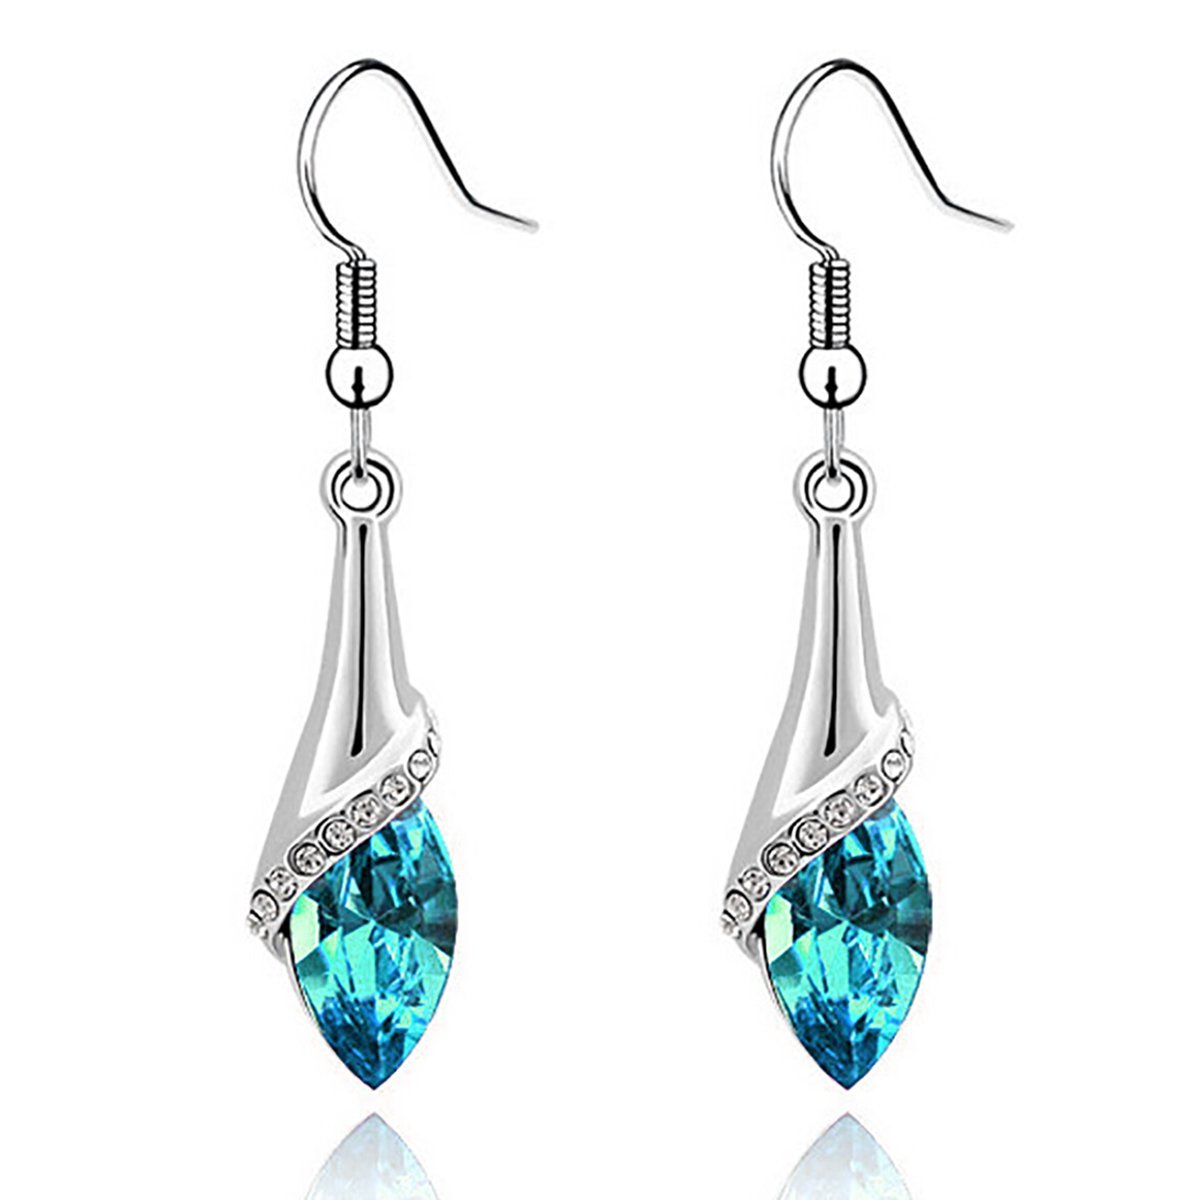 Swarovski Elements Crystal Teardrop Earrings